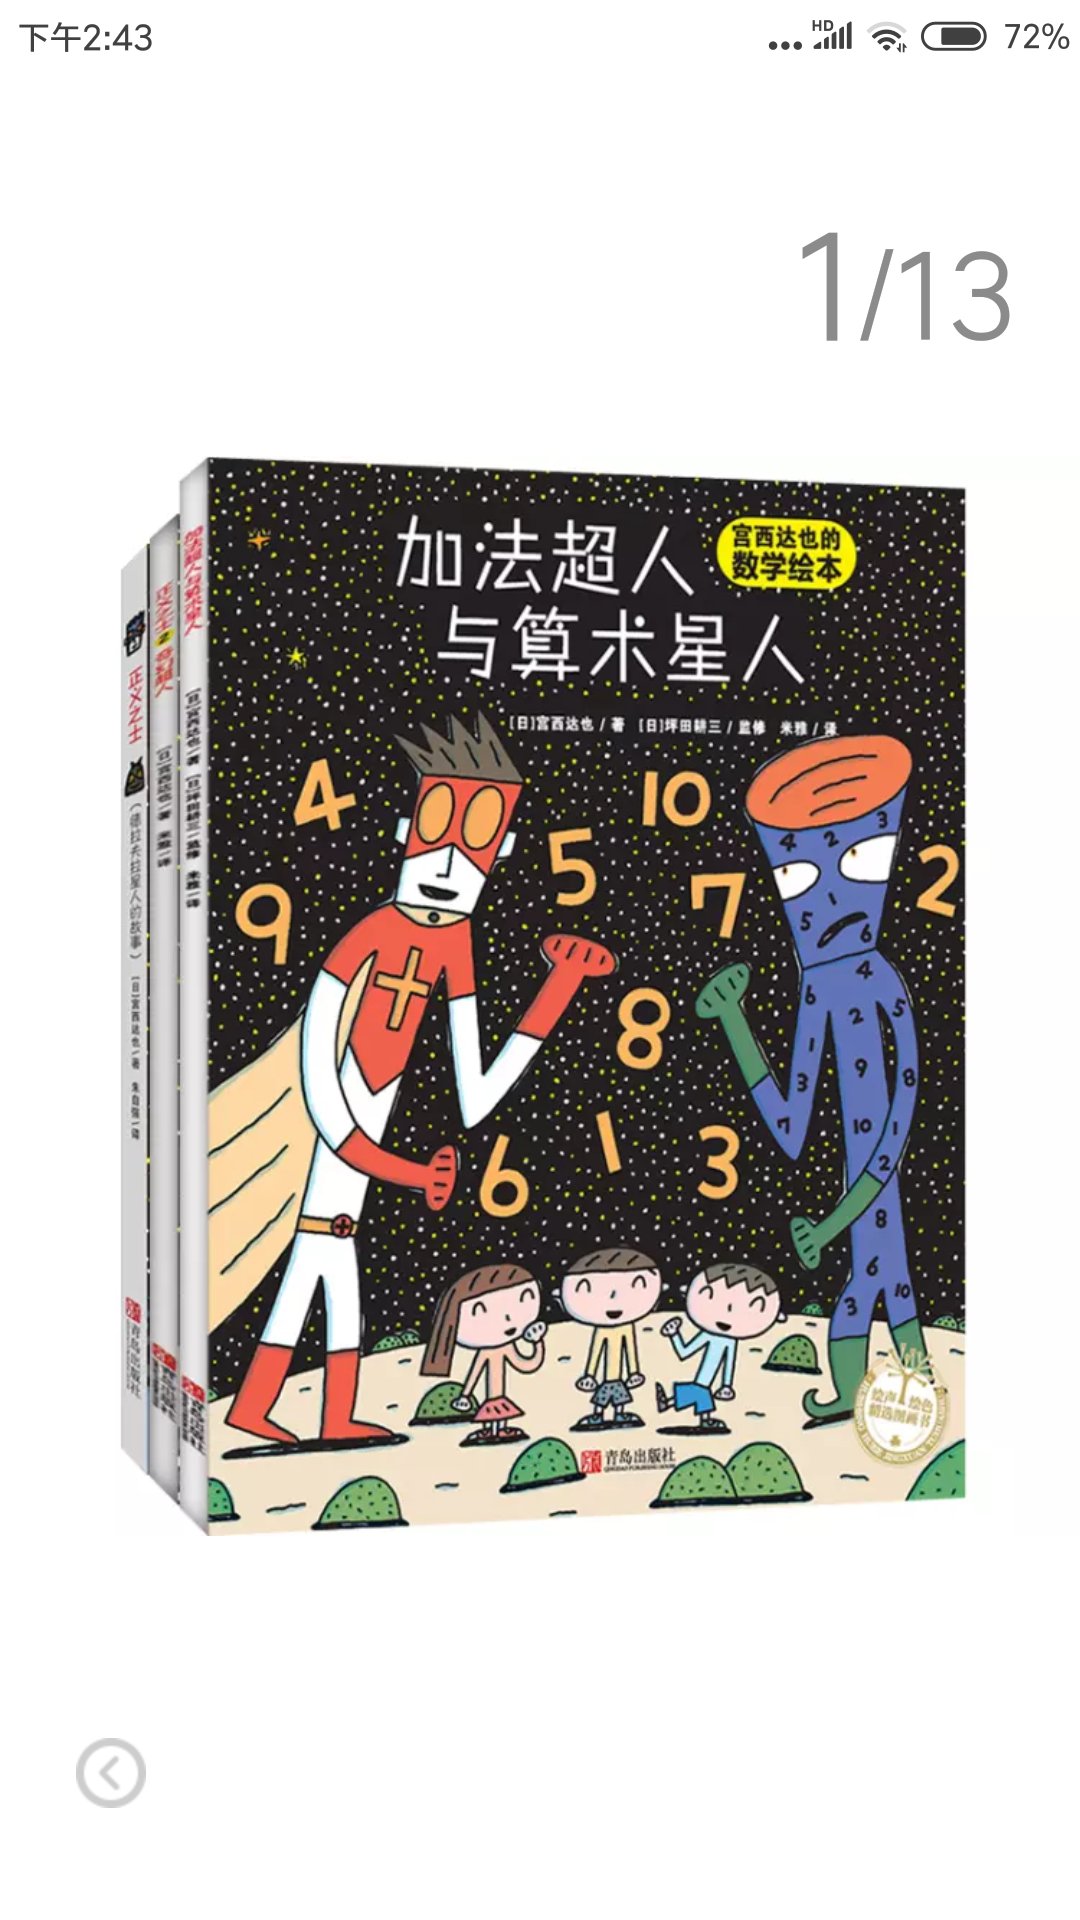 不错不错不错，很有意思的一套书，尤其是数学启蒙这个，孩子很喜欢看，刚三岁，平常也看数学方面的书，这本最喜欢